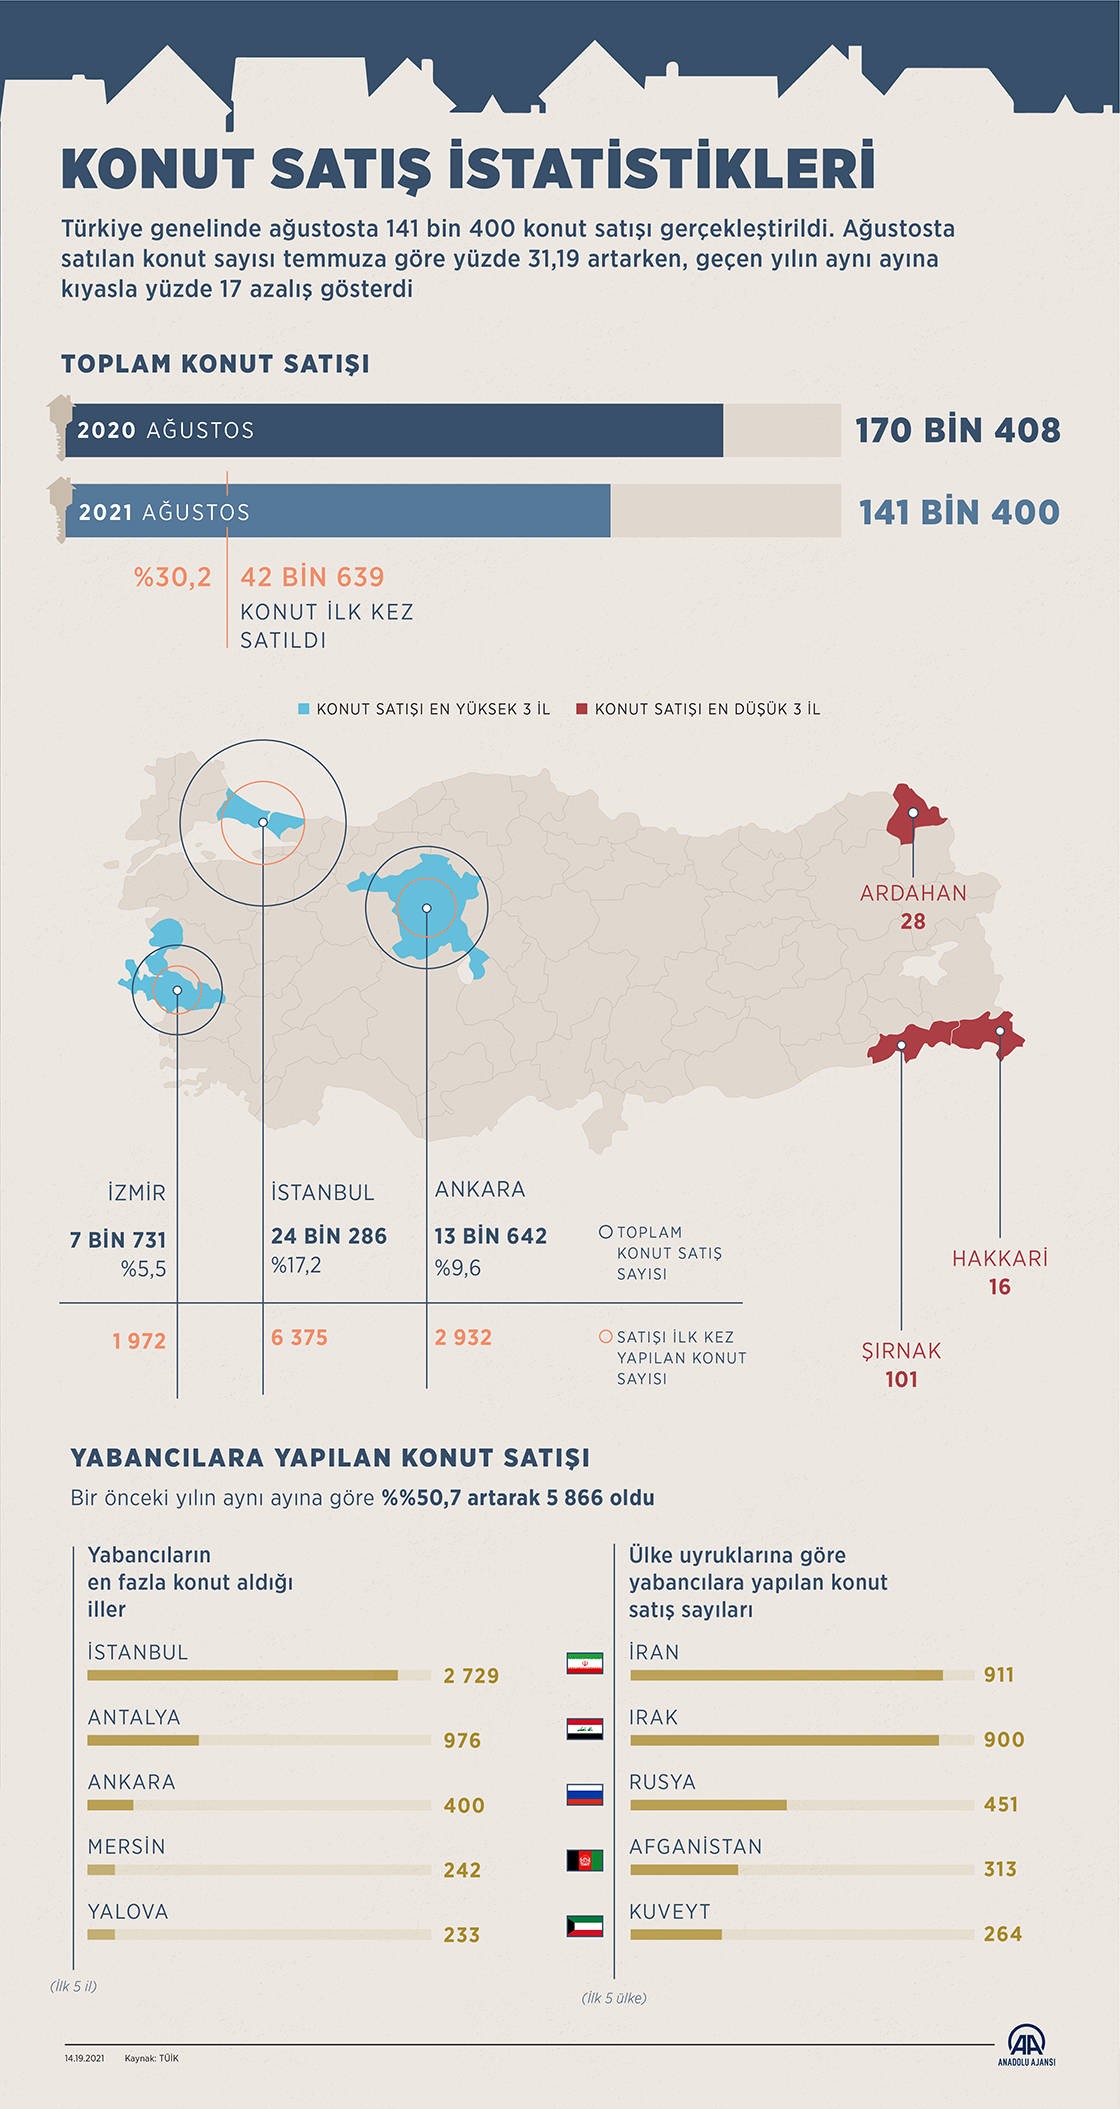  Türkiye'de ağustosta 141 bin 400 konut satıldı